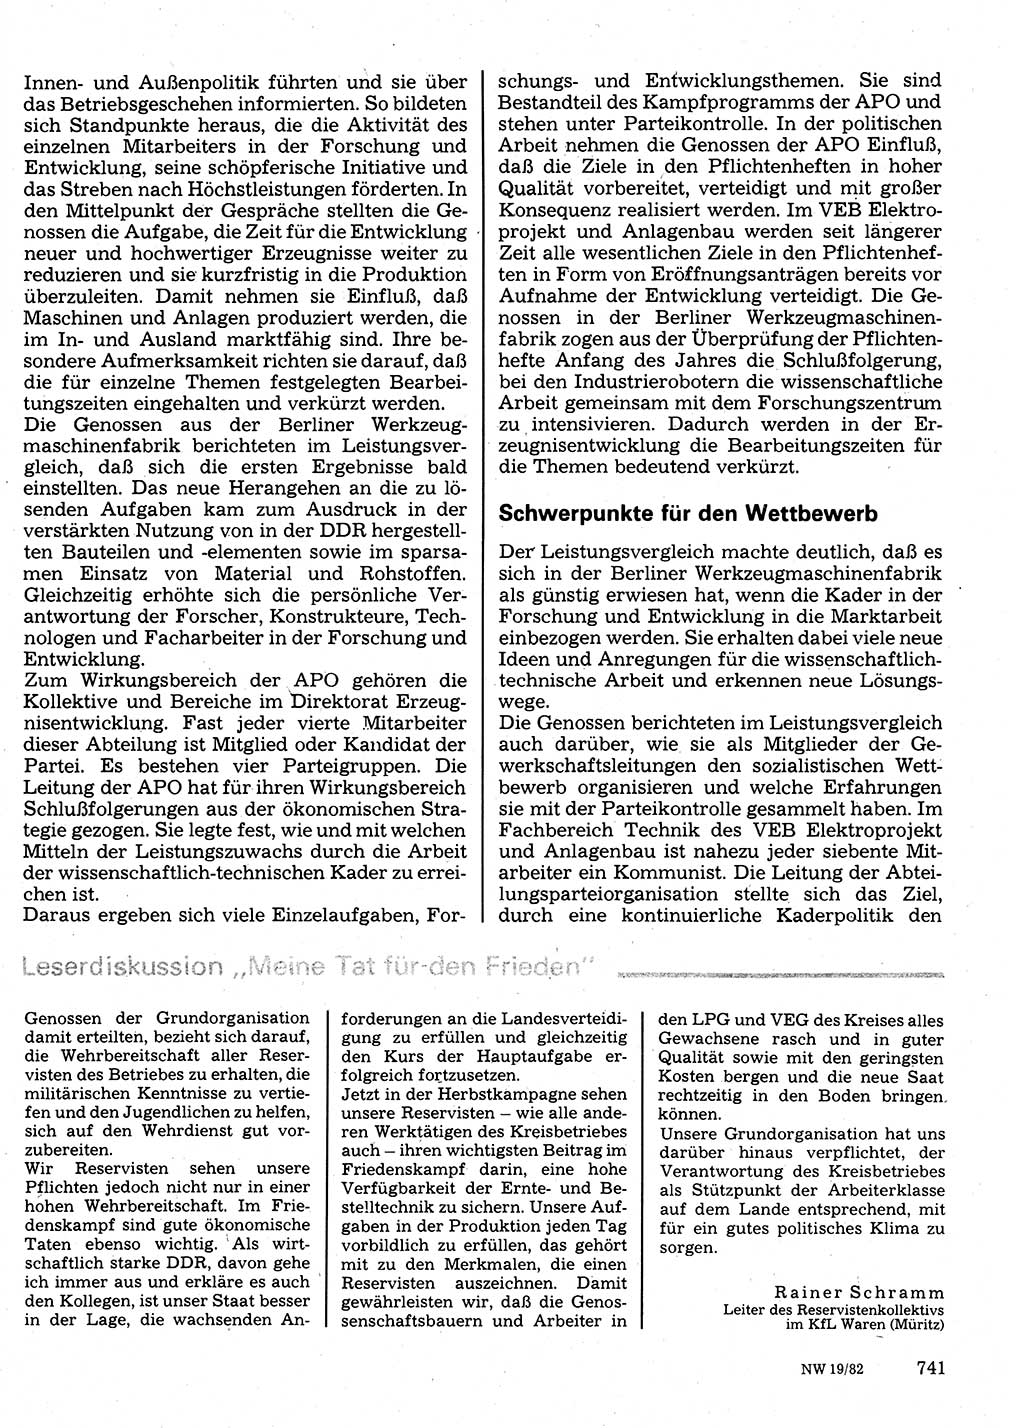 Neuer Weg (NW), Organ des Zentralkomitees (ZK) der SED (Sozialistische Einheitspartei Deutschlands) für Fragen des Parteilebens, 37. Jahrgang [Deutsche Demokratische Republik (DDR)] 1982, Seite 741 (NW ZK SED DDR 1982, S. 741)